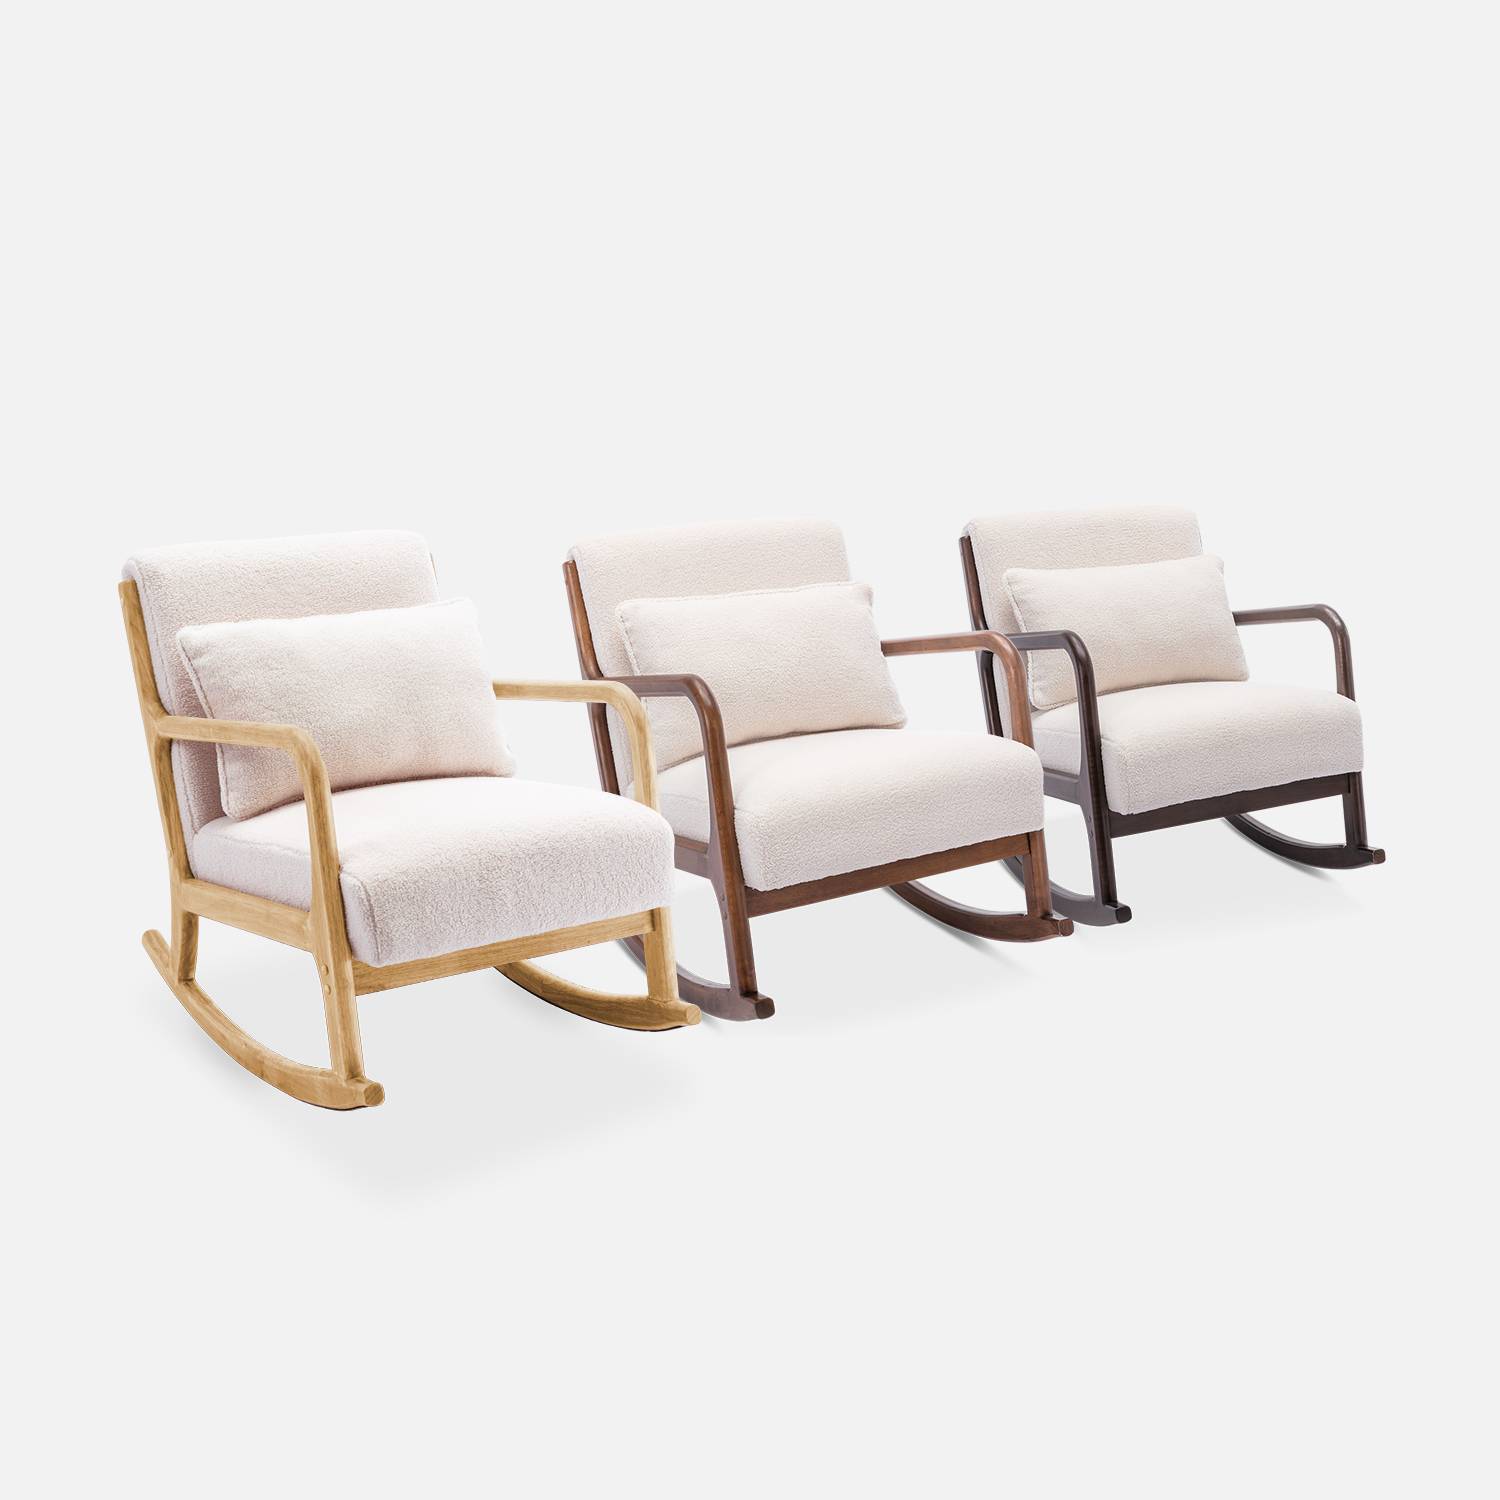 Design-Schaukelstuhl aus Holz und Bouclé-Stoff in Weiß, 1 Sitz, Schaukelstuhl in skandinavischem Design Photo7